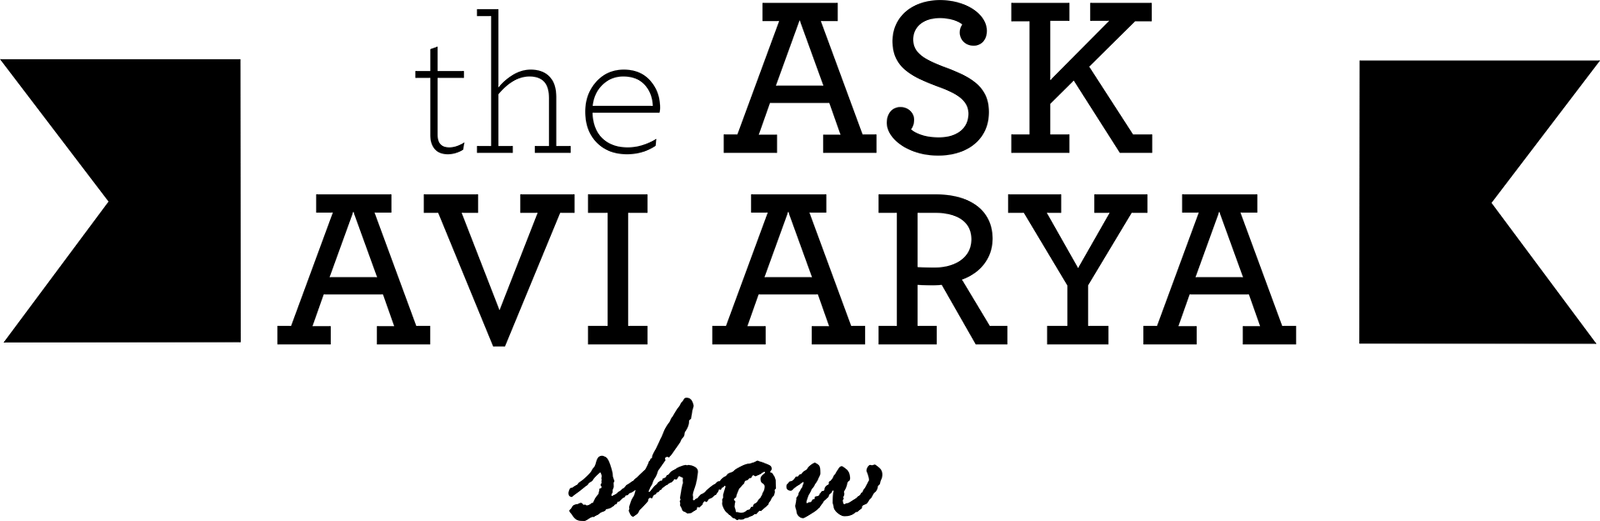 AAA-Logo-BALCK-1